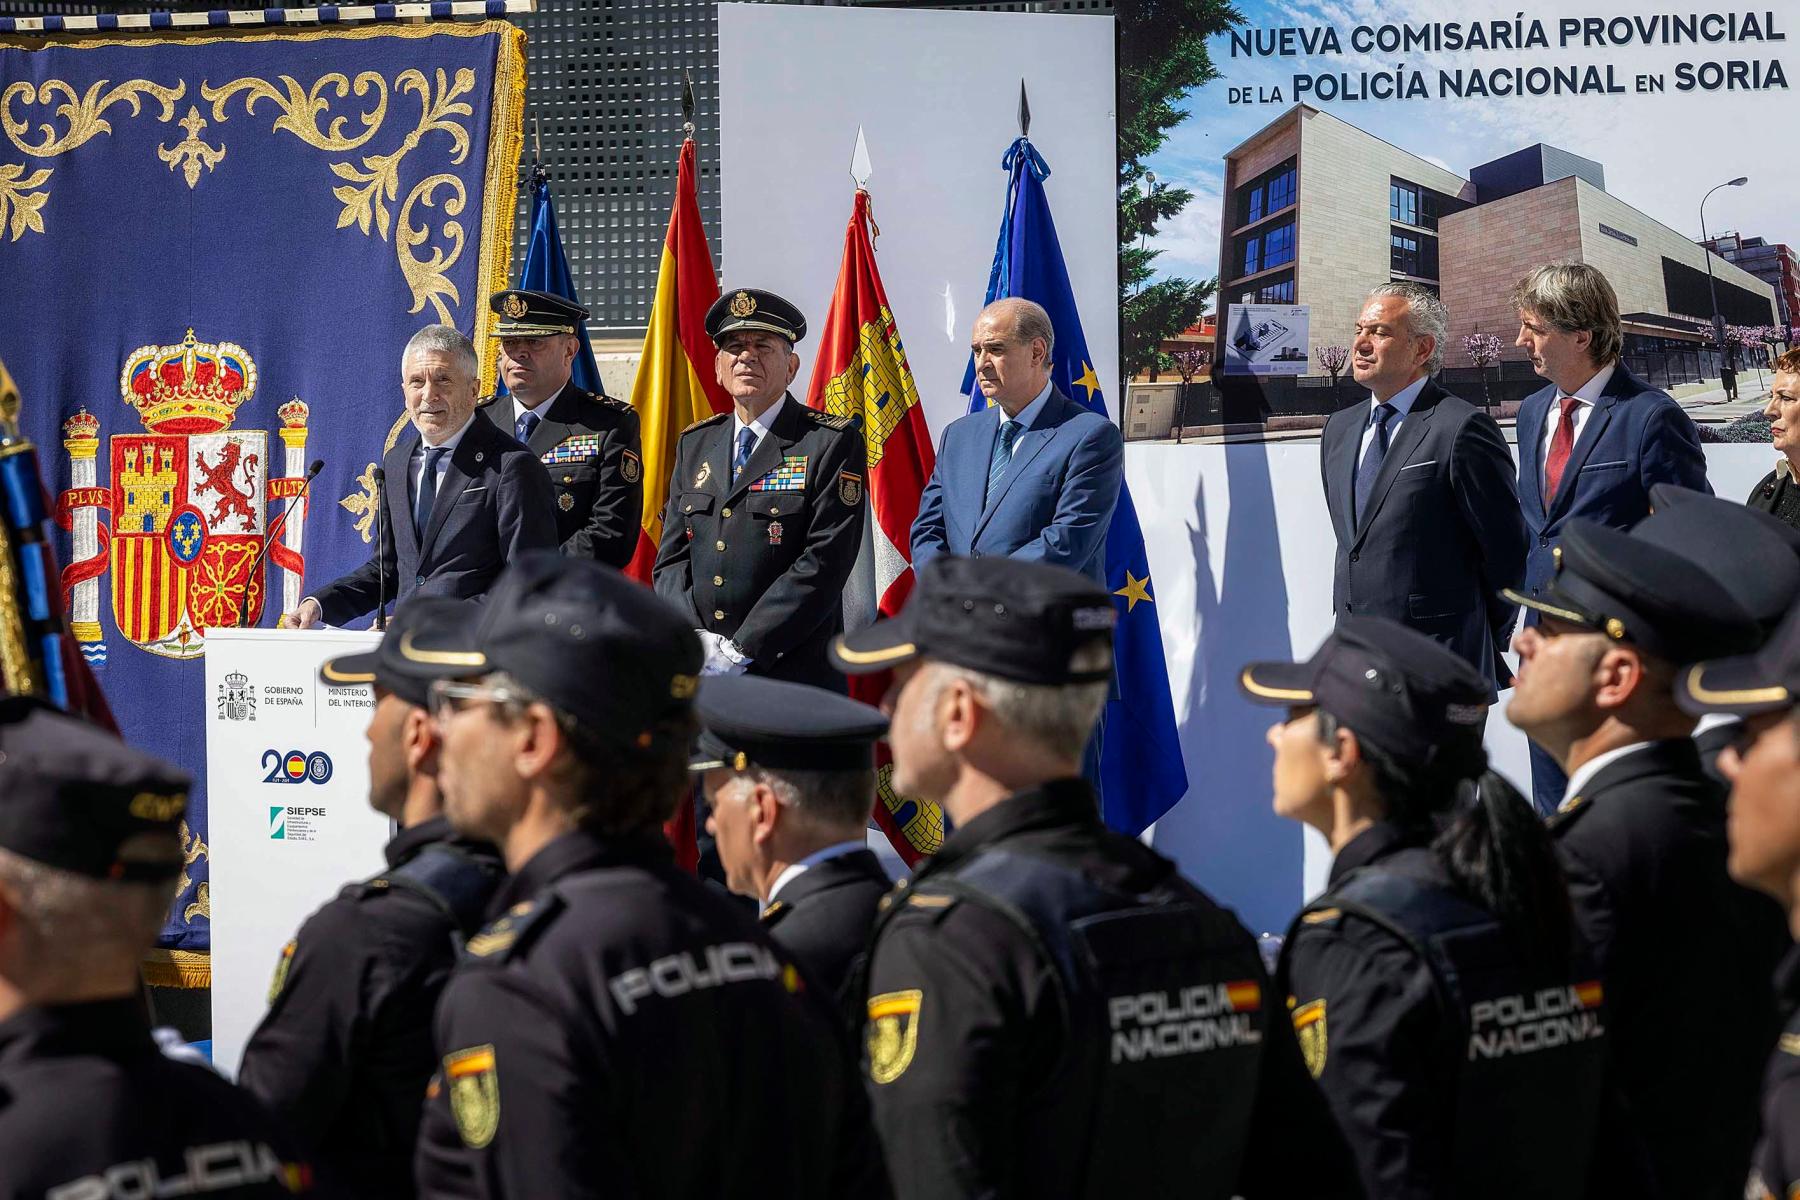 Grande-Marlaska destaca el aumento de efectivos como muestra del compromiso con la seguridad y el progreso en Soria 